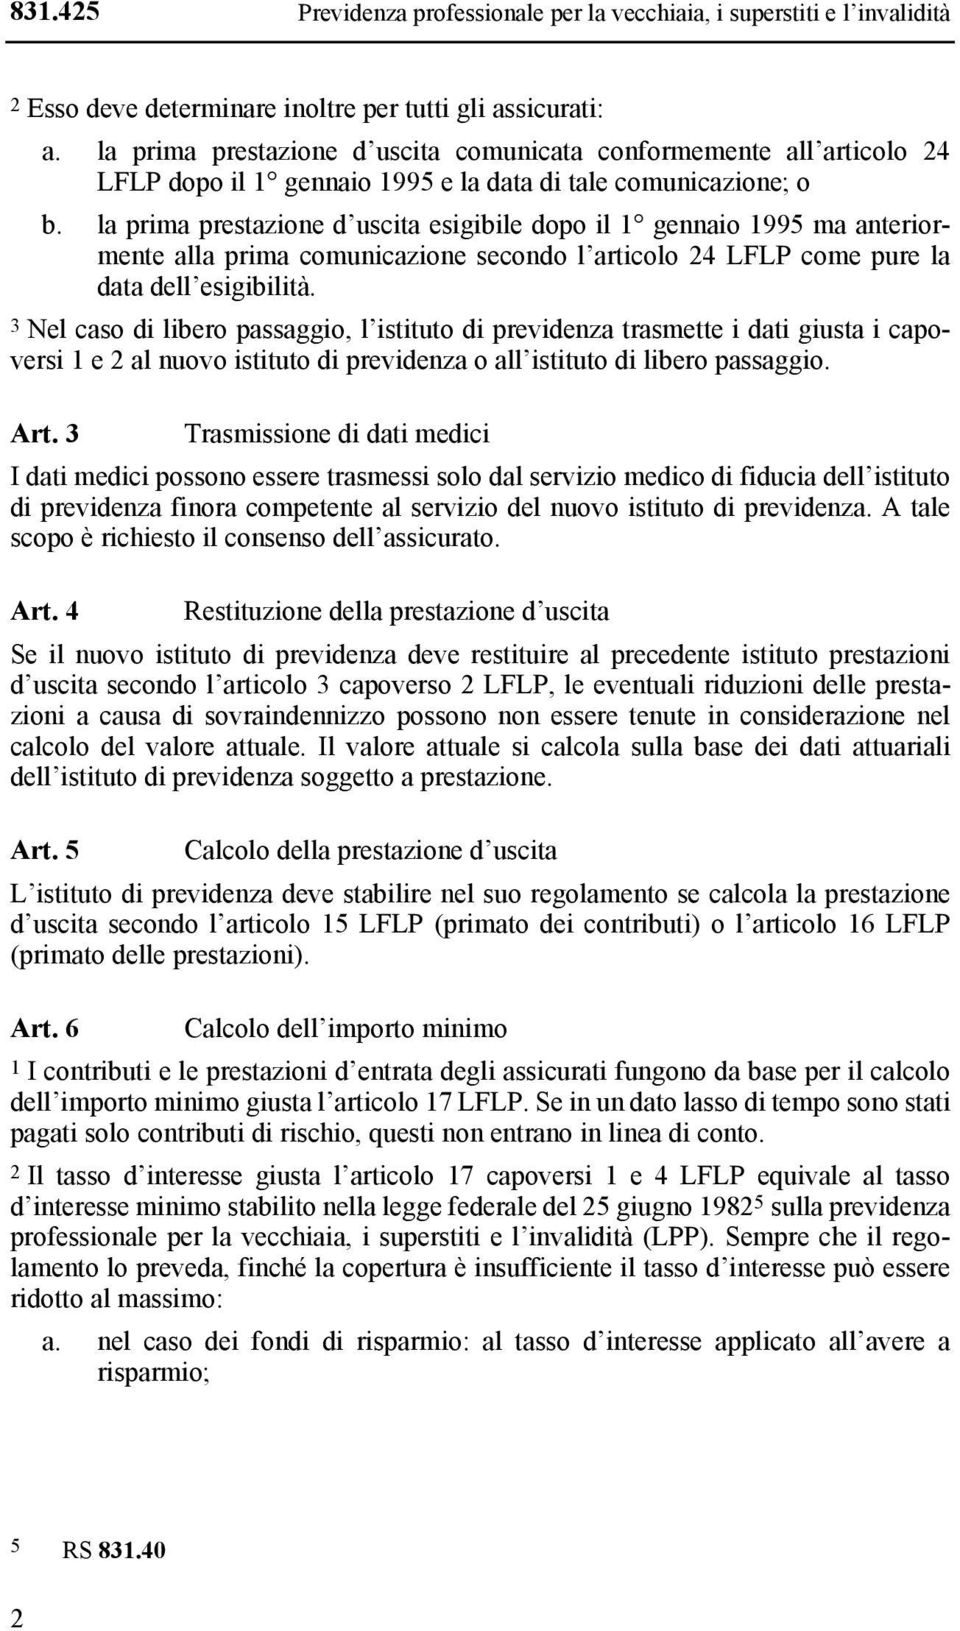 la prima prestazione d uscita esigibile dopo il 1 gennaio 1995 ma anteriormente alla prima comunicazione secondo l articolo 24 LFLP come pure la data dell esigibilità.